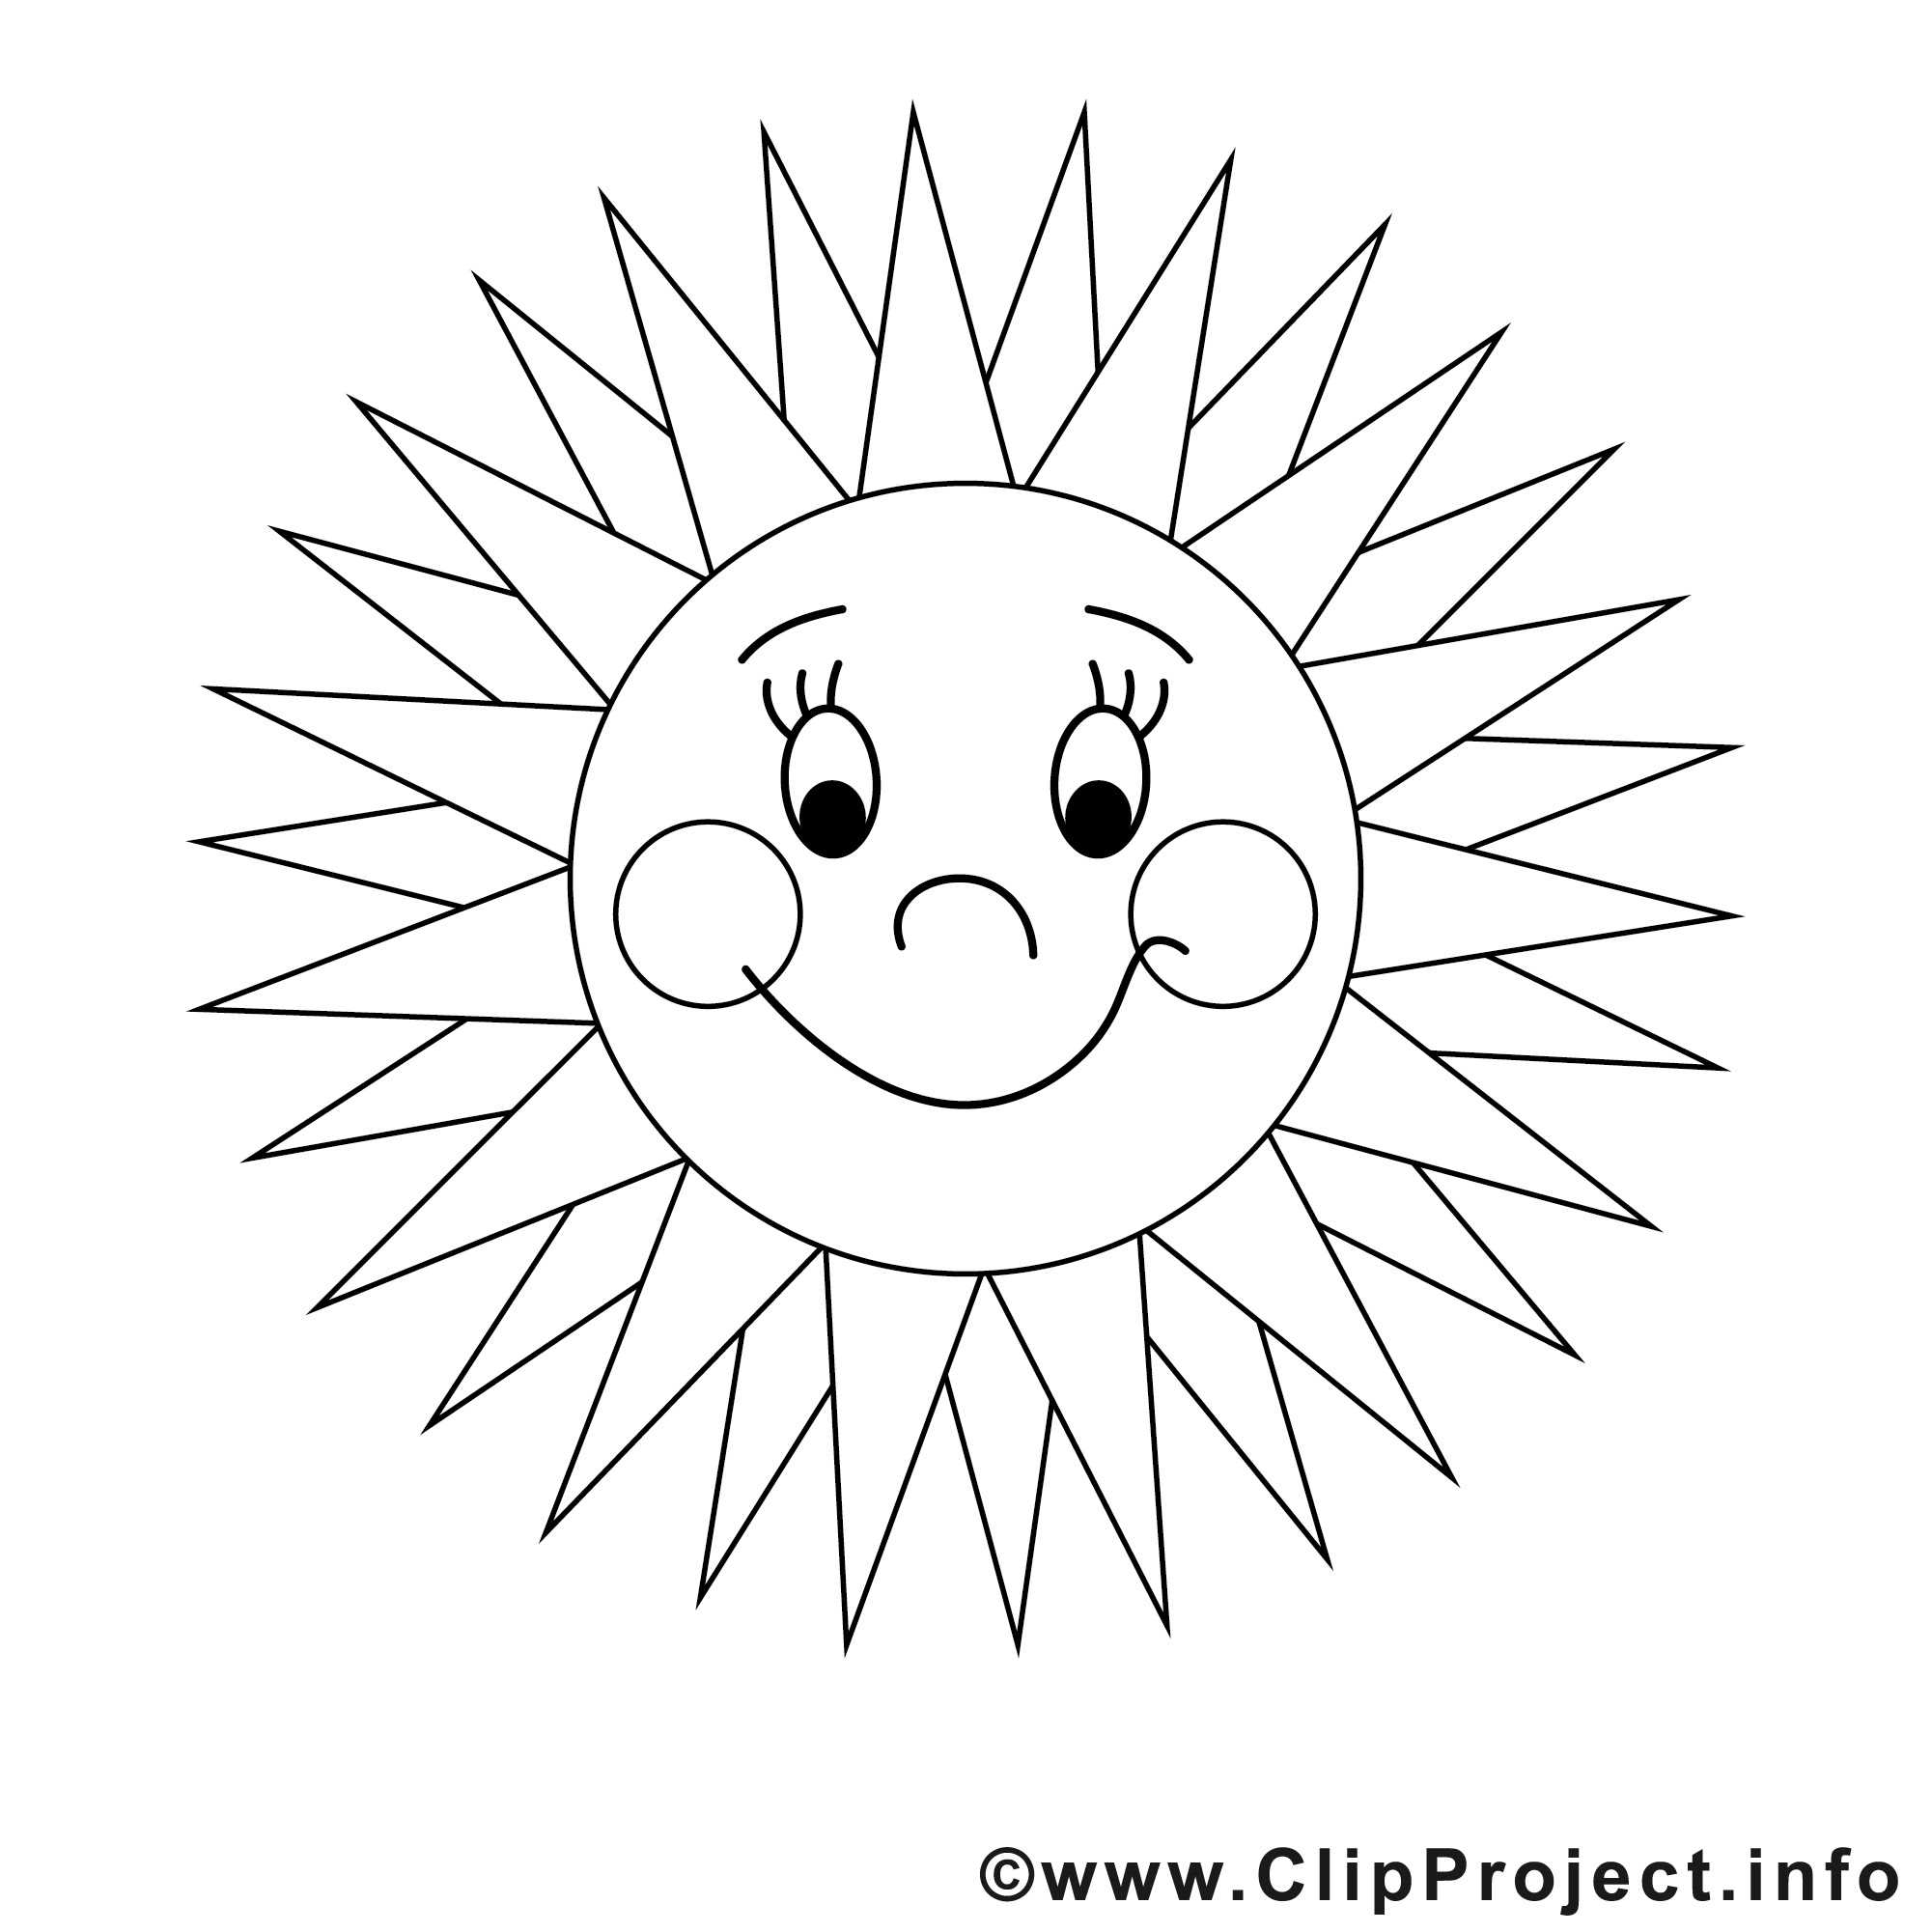 Как нарисовать солнце пошагово: легкая инструкция для самых маленьких. веселые картинки и советы от художника